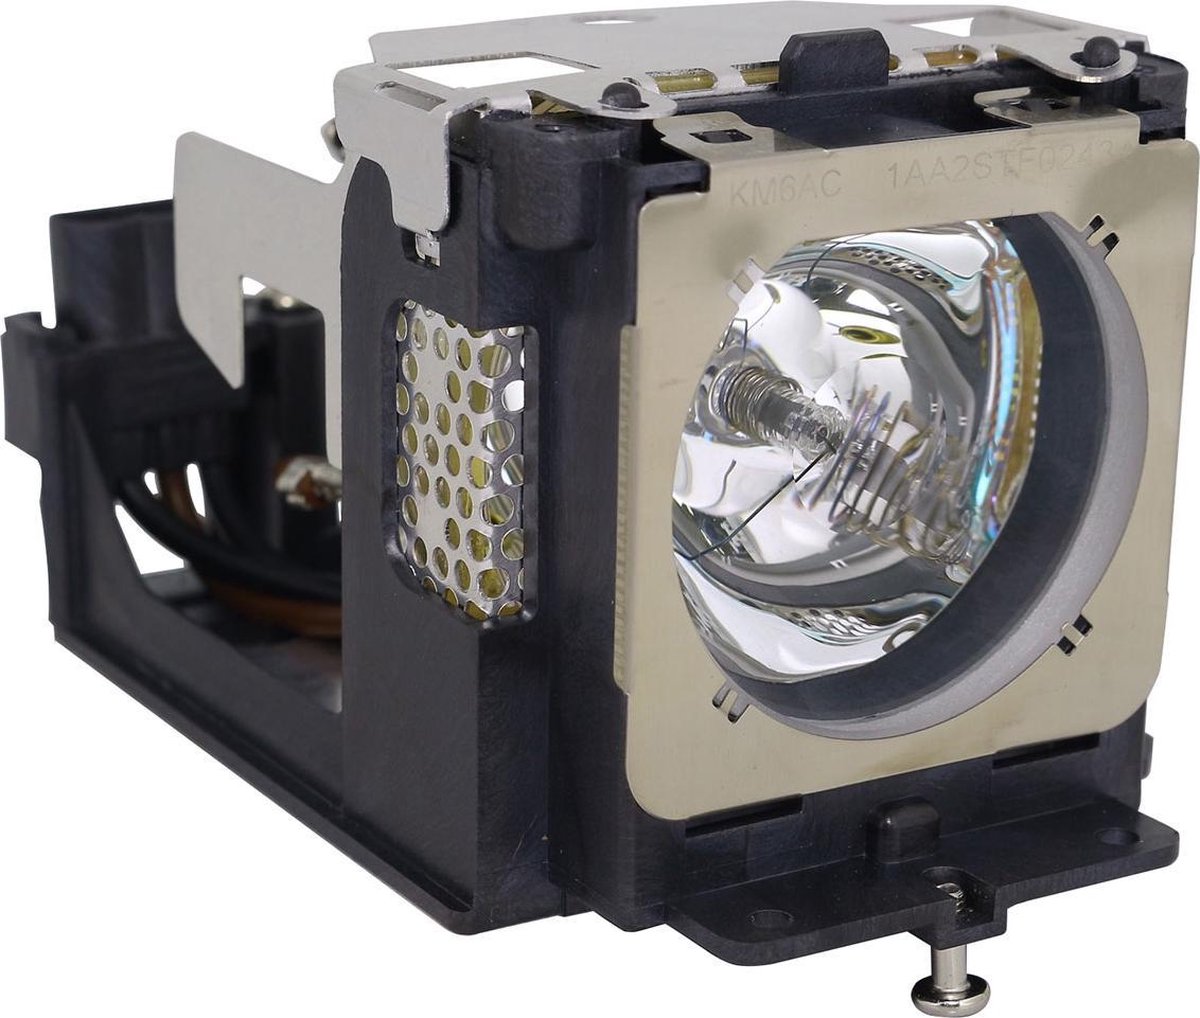 Beamerlamp geschikt voor de EIKI LC-XB41N beamer, lamp code POA-LMP111 / 610-333-9740. Bevat originele NSHA lamp, prestaties gelijk aan origineel.